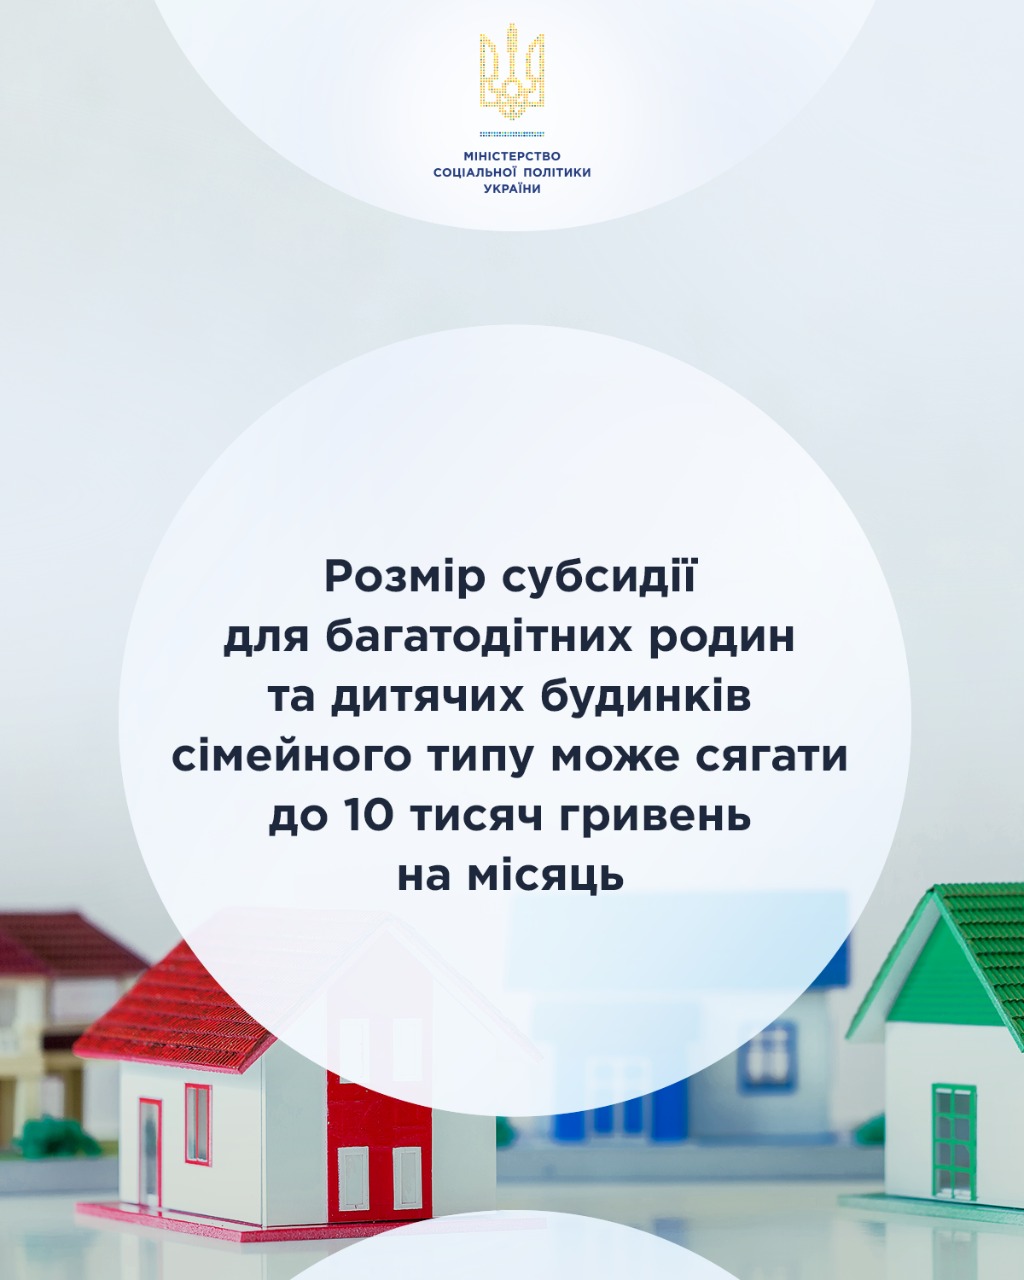 Розмір субсидії для багатодітних родин та дитячих будинків сімейного типу може сягати до 10 тисяч гривень на місяць